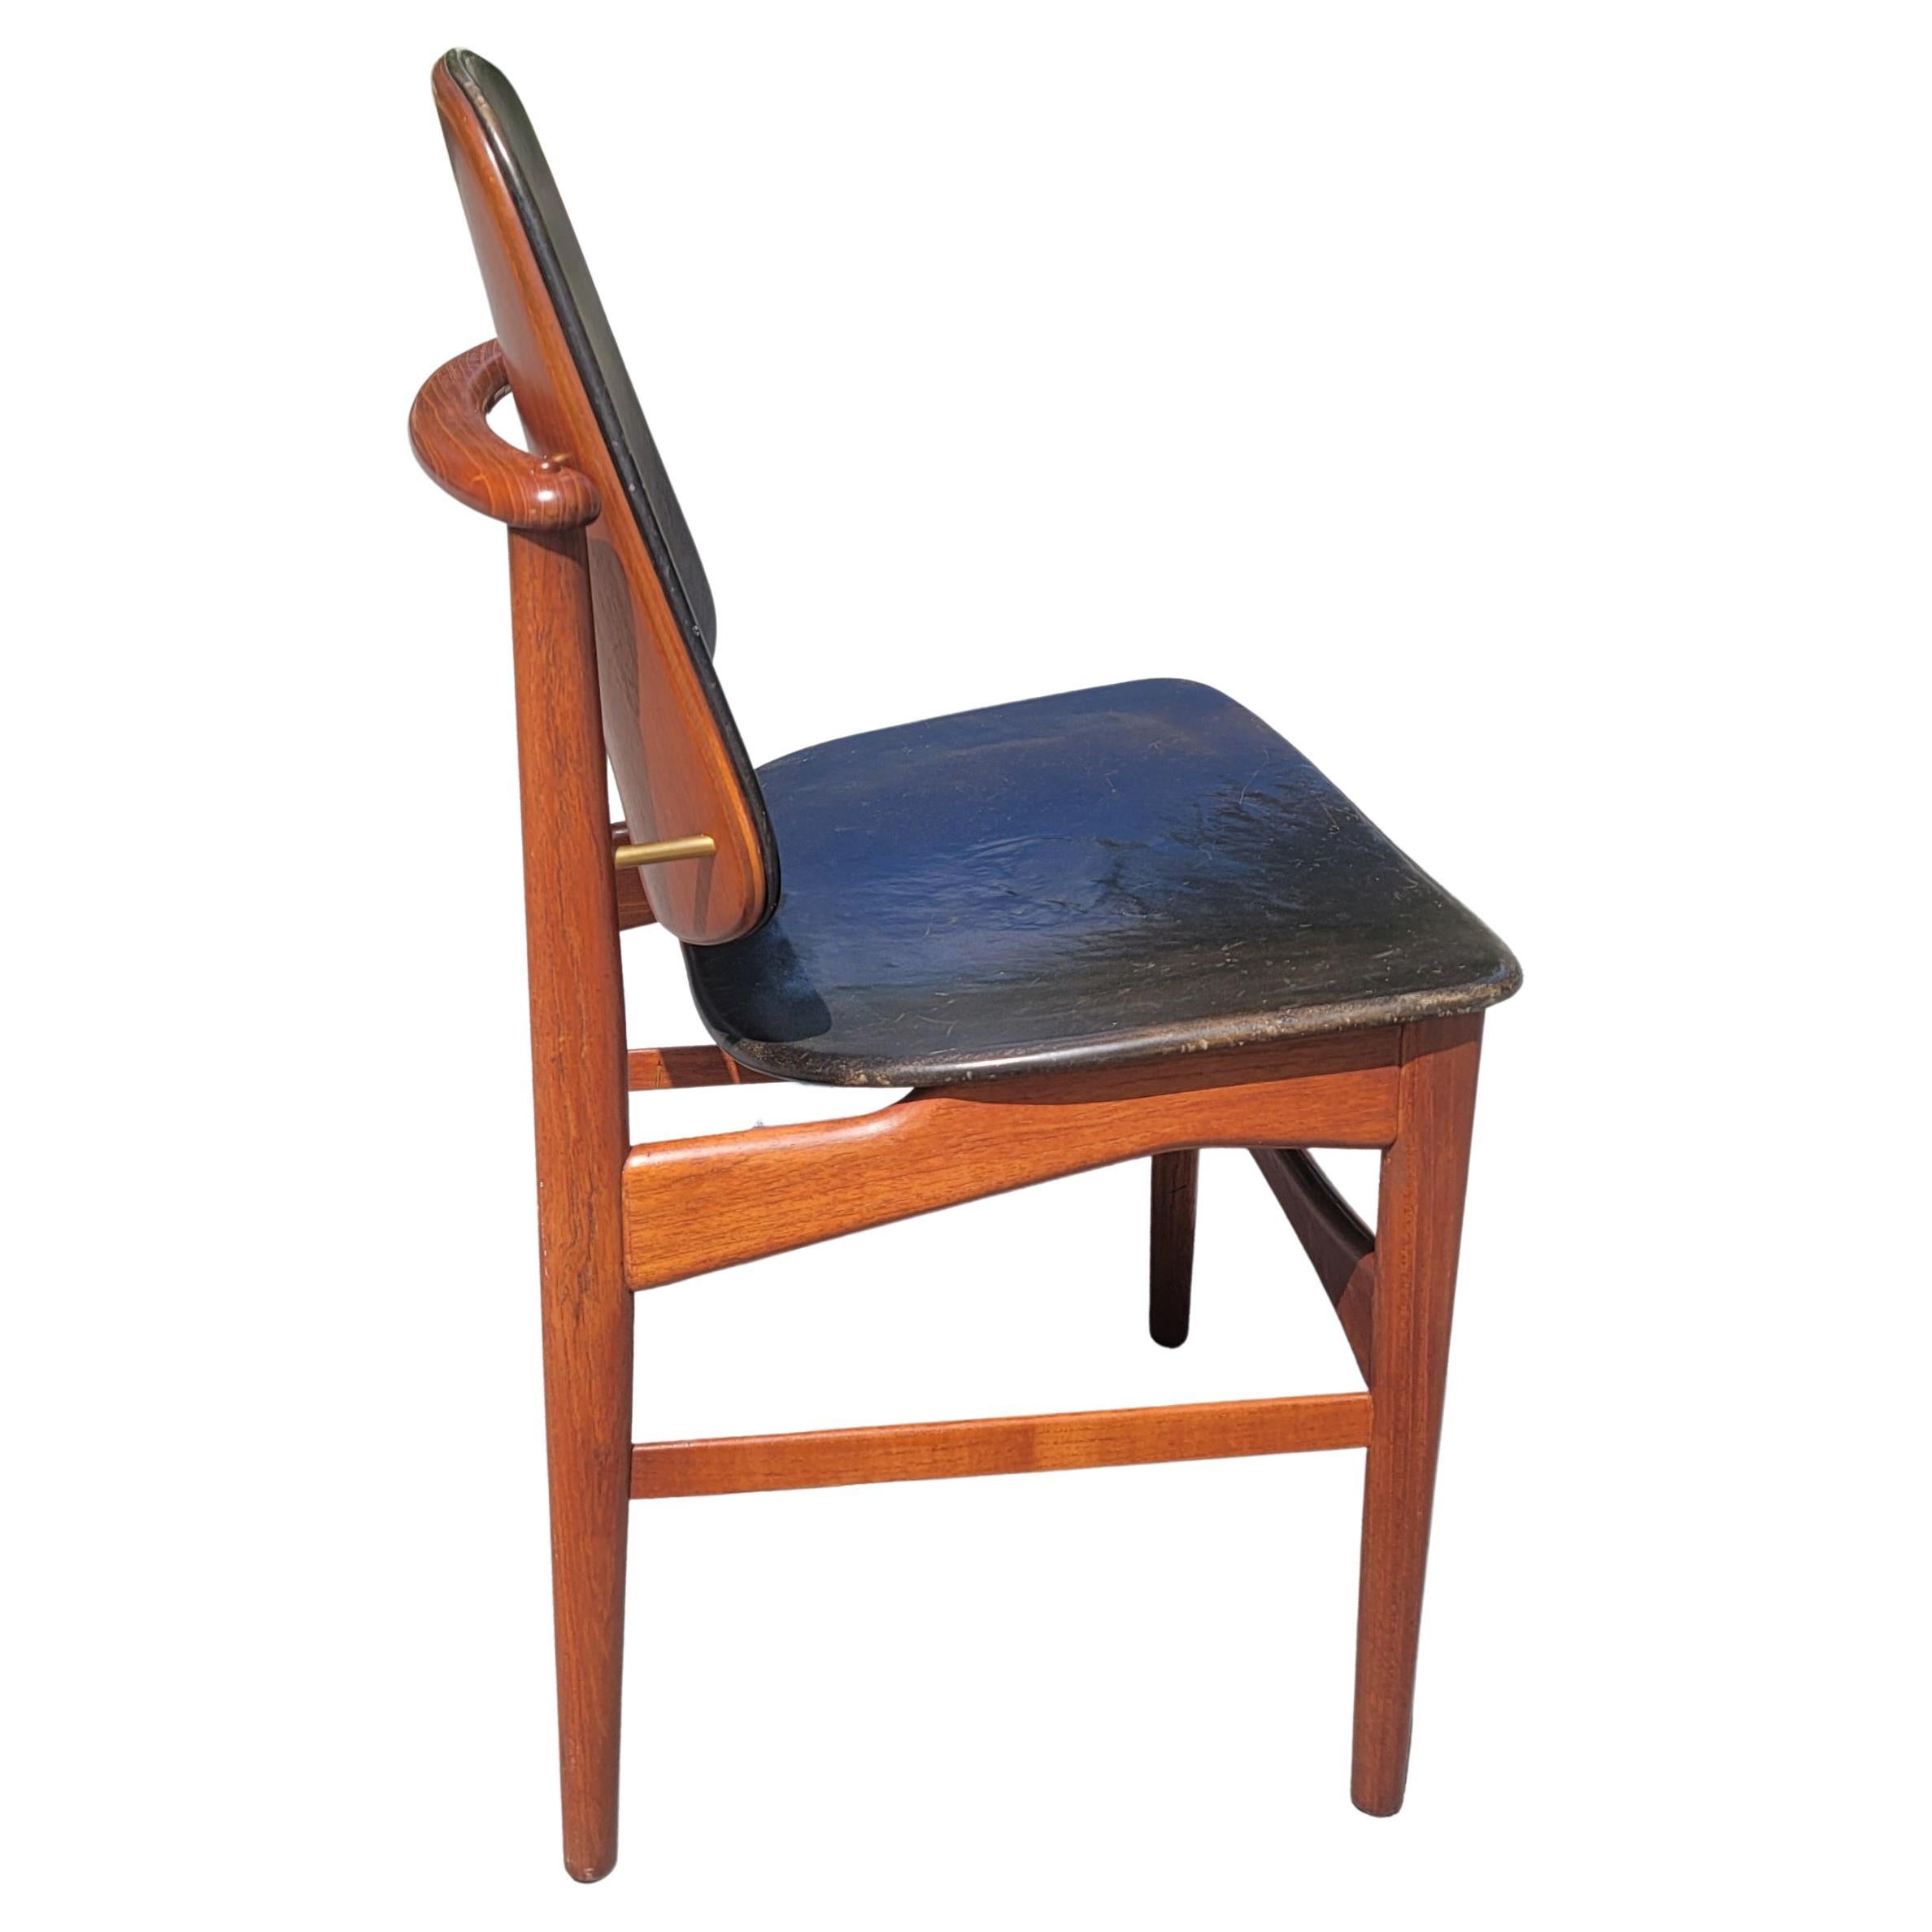 Scandinavian Modern 1950s Danish Solid Teak & Leather Chair by Arne Vodder for France & Daverkosen For Sale